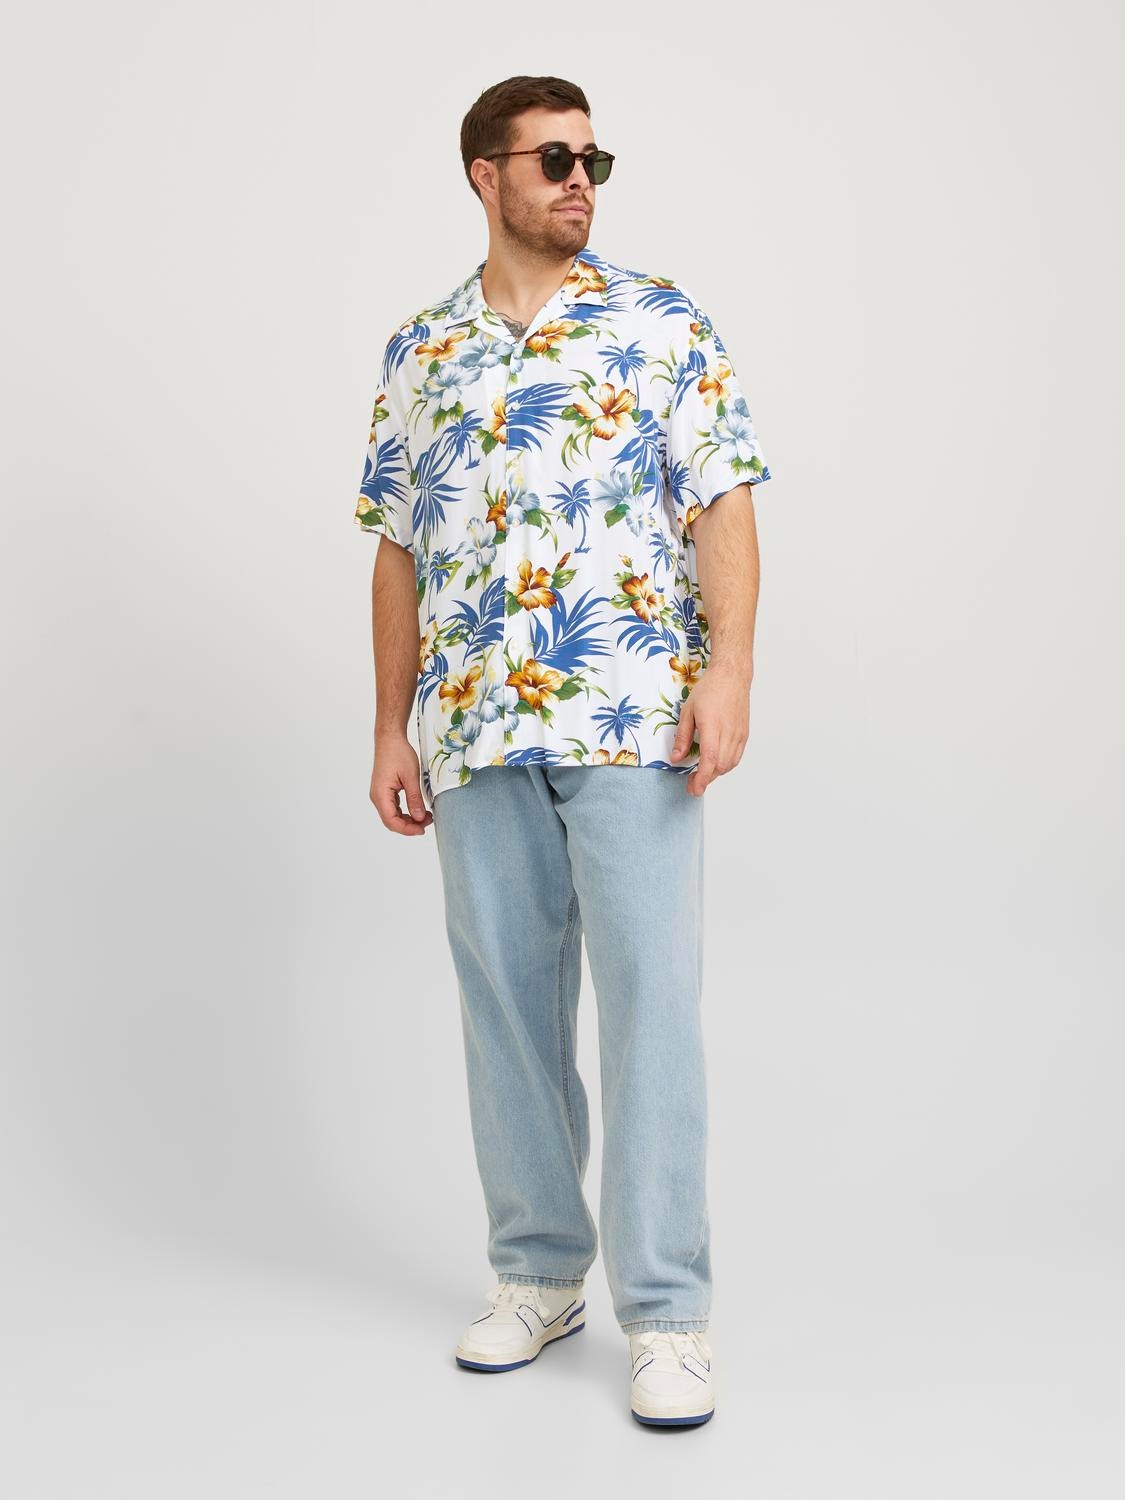 Jack & Jones Plus Size Relaxed Fit Shirt -Cloud Dancer - 12250684